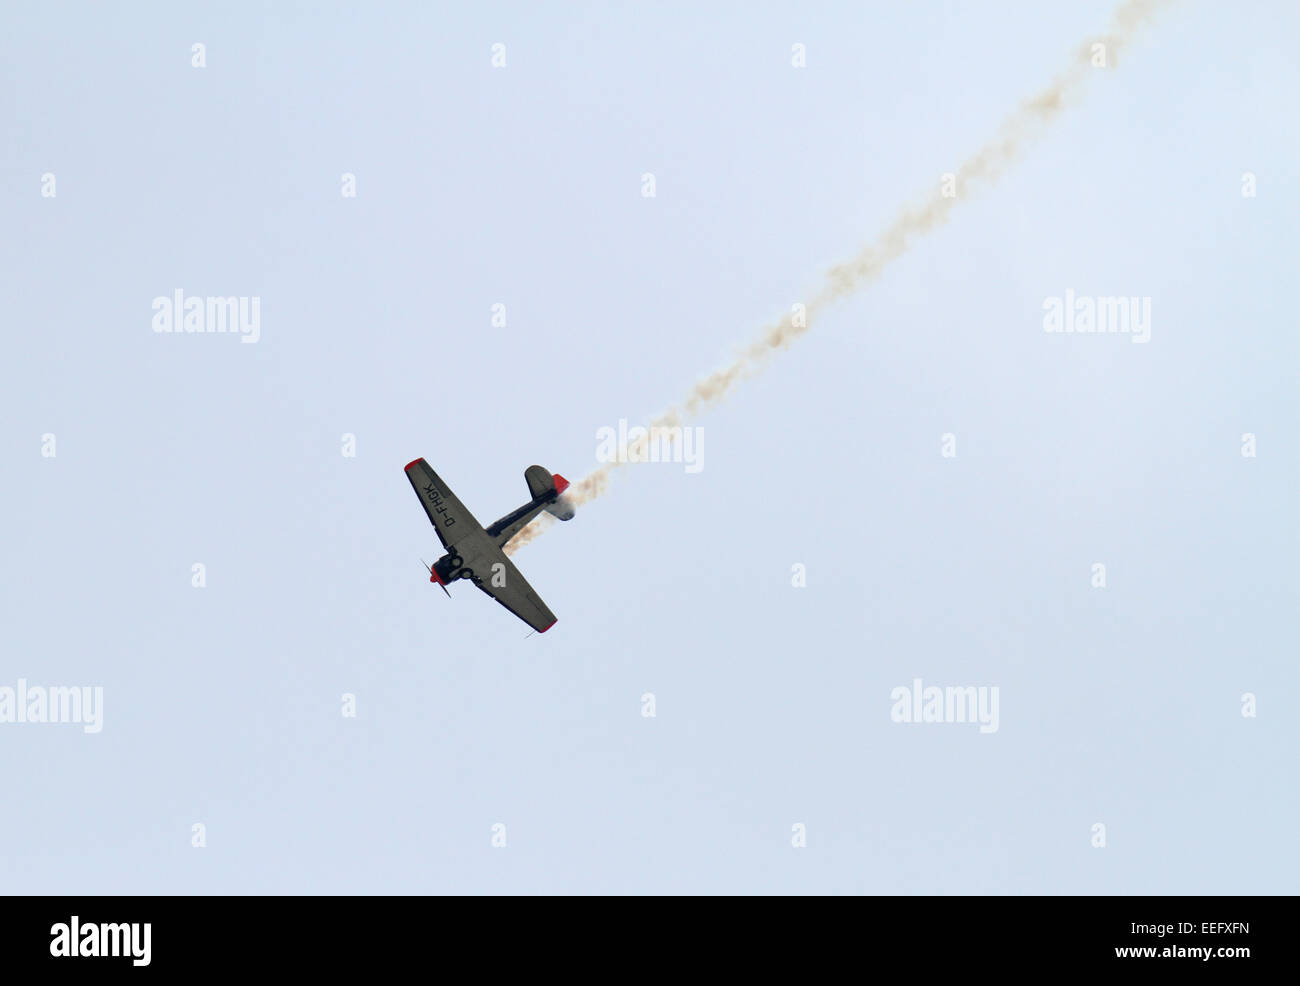 Schoenefeld, Germany, aerobatic aircraft Noorduyn AT-16 Harvard IIB Stock Photo